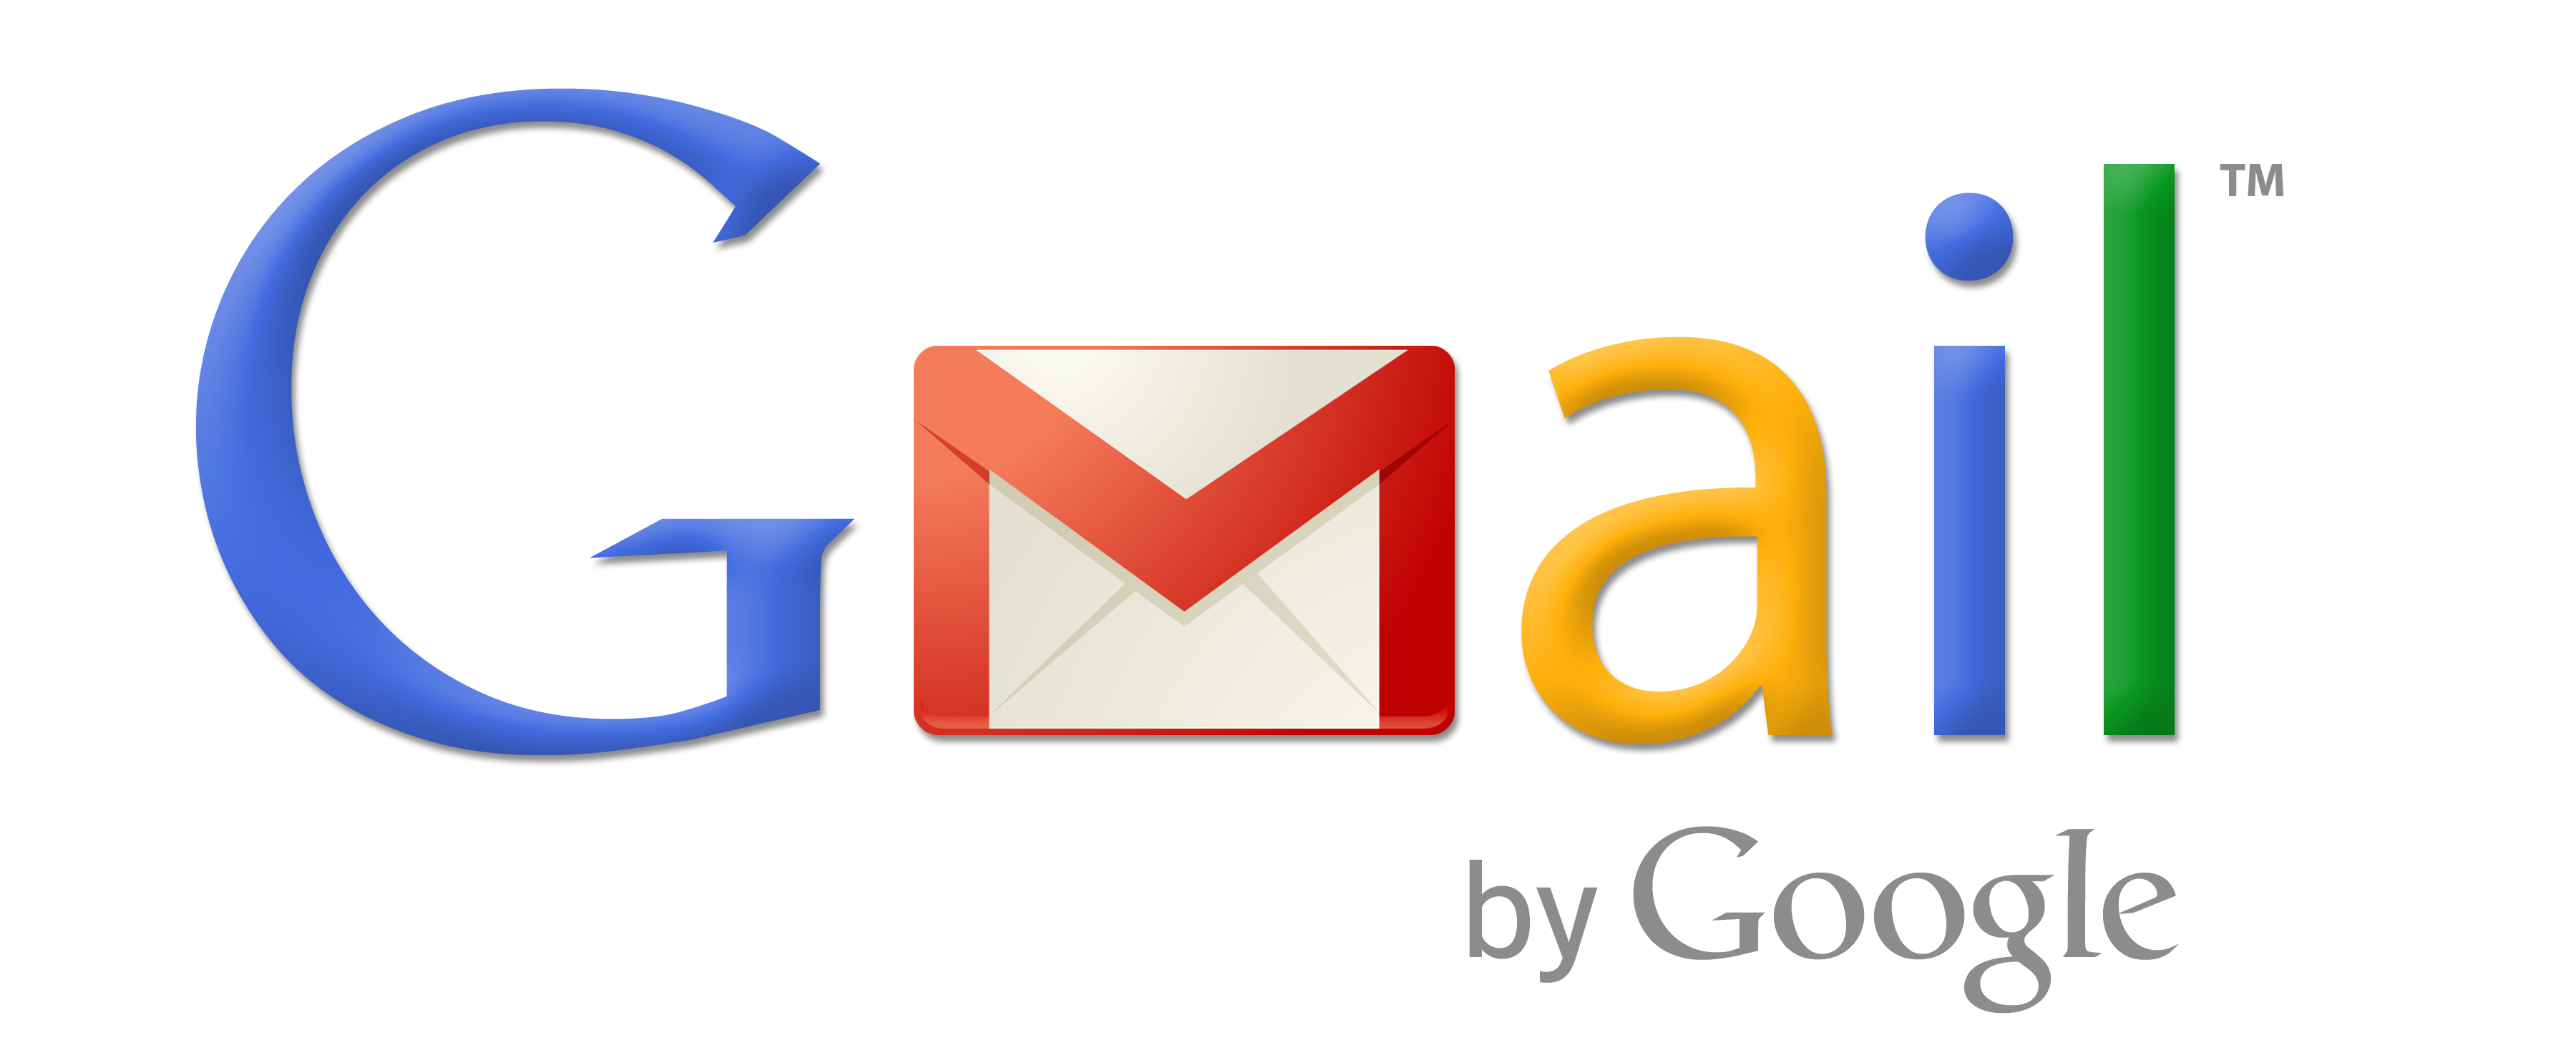 Колледж из США отсудил у экс-администратора $250000 за утерю доступа к Gmail-аккаунту организации - 1